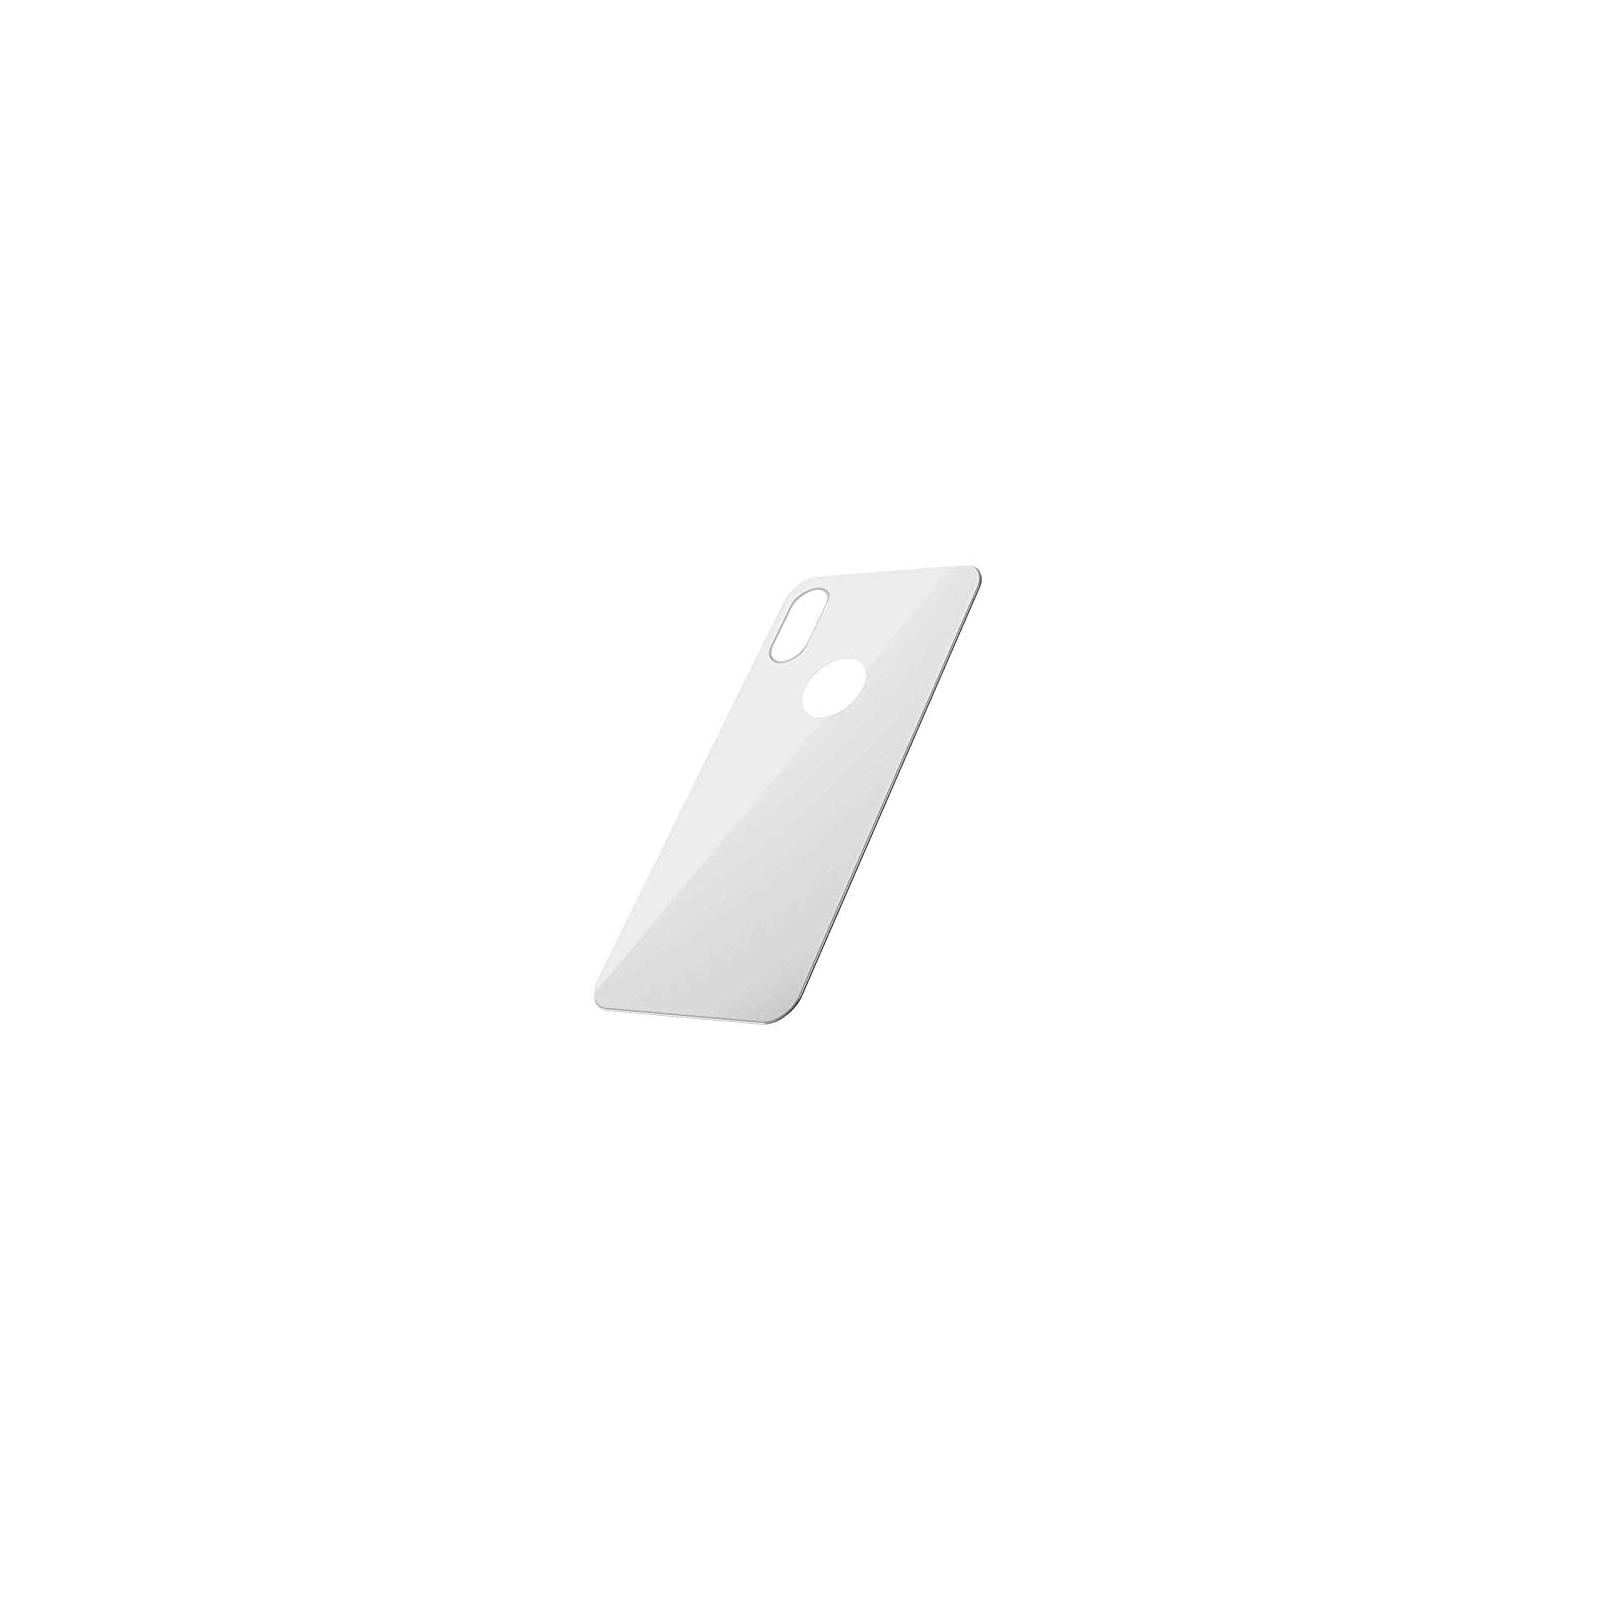 Стекло защитное Baseus iPhone XS 0.3mm Full rear protector, White (SGAPIPH58-BM02) изображение 2